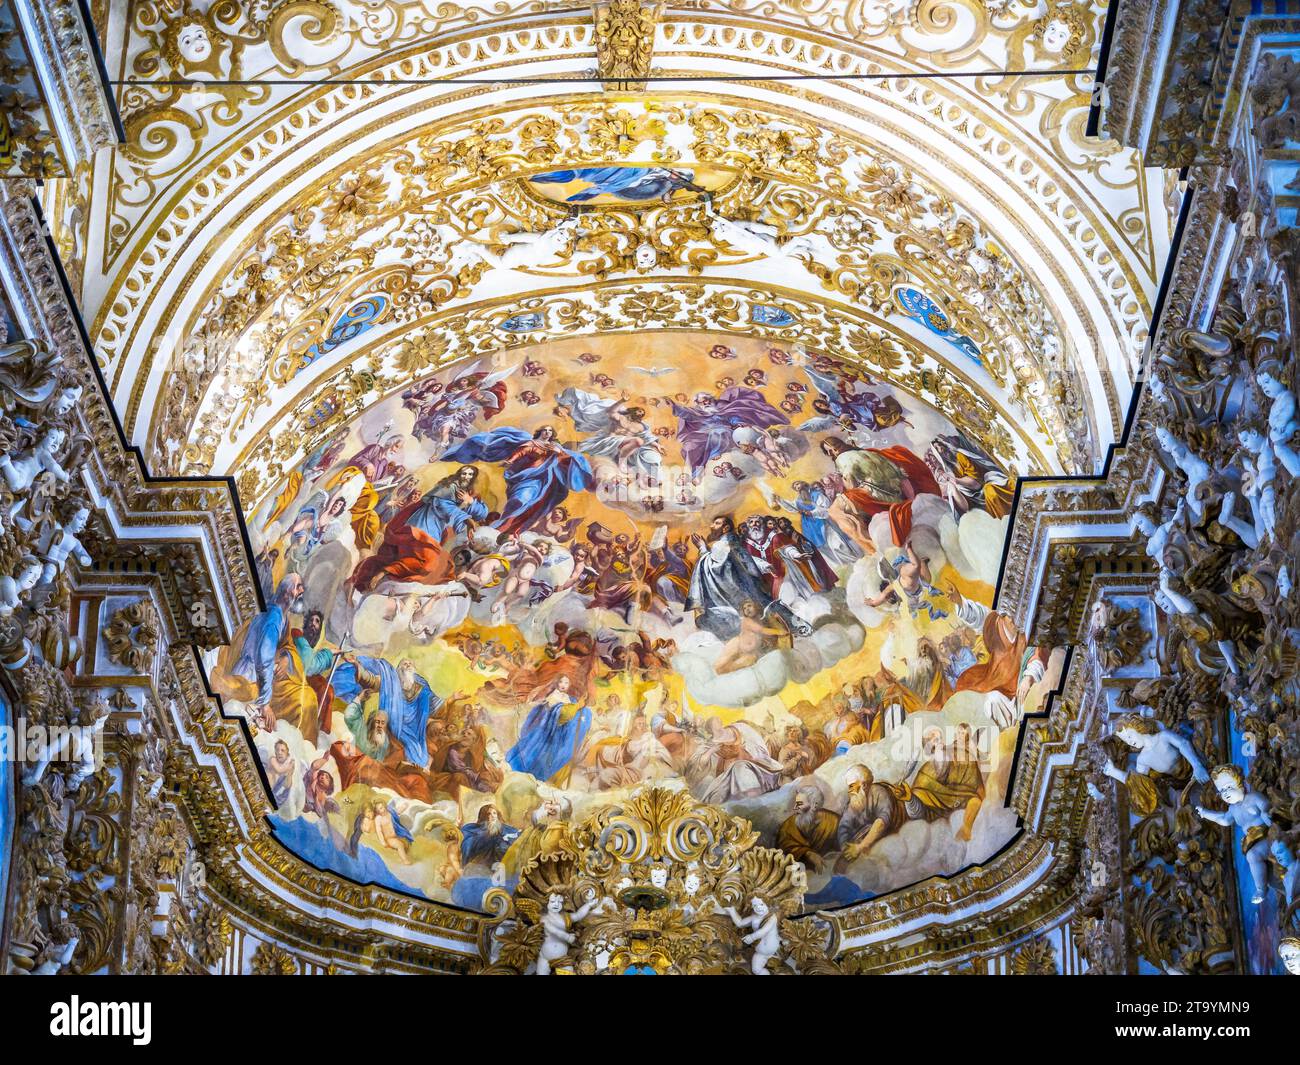 Fresko des Himmels von Michele Blasco (17. Jahrhundert) - Cattedrale di San Gerlando (Kathedrale von Agrigent) - Sizilien, Italien Stockfoto